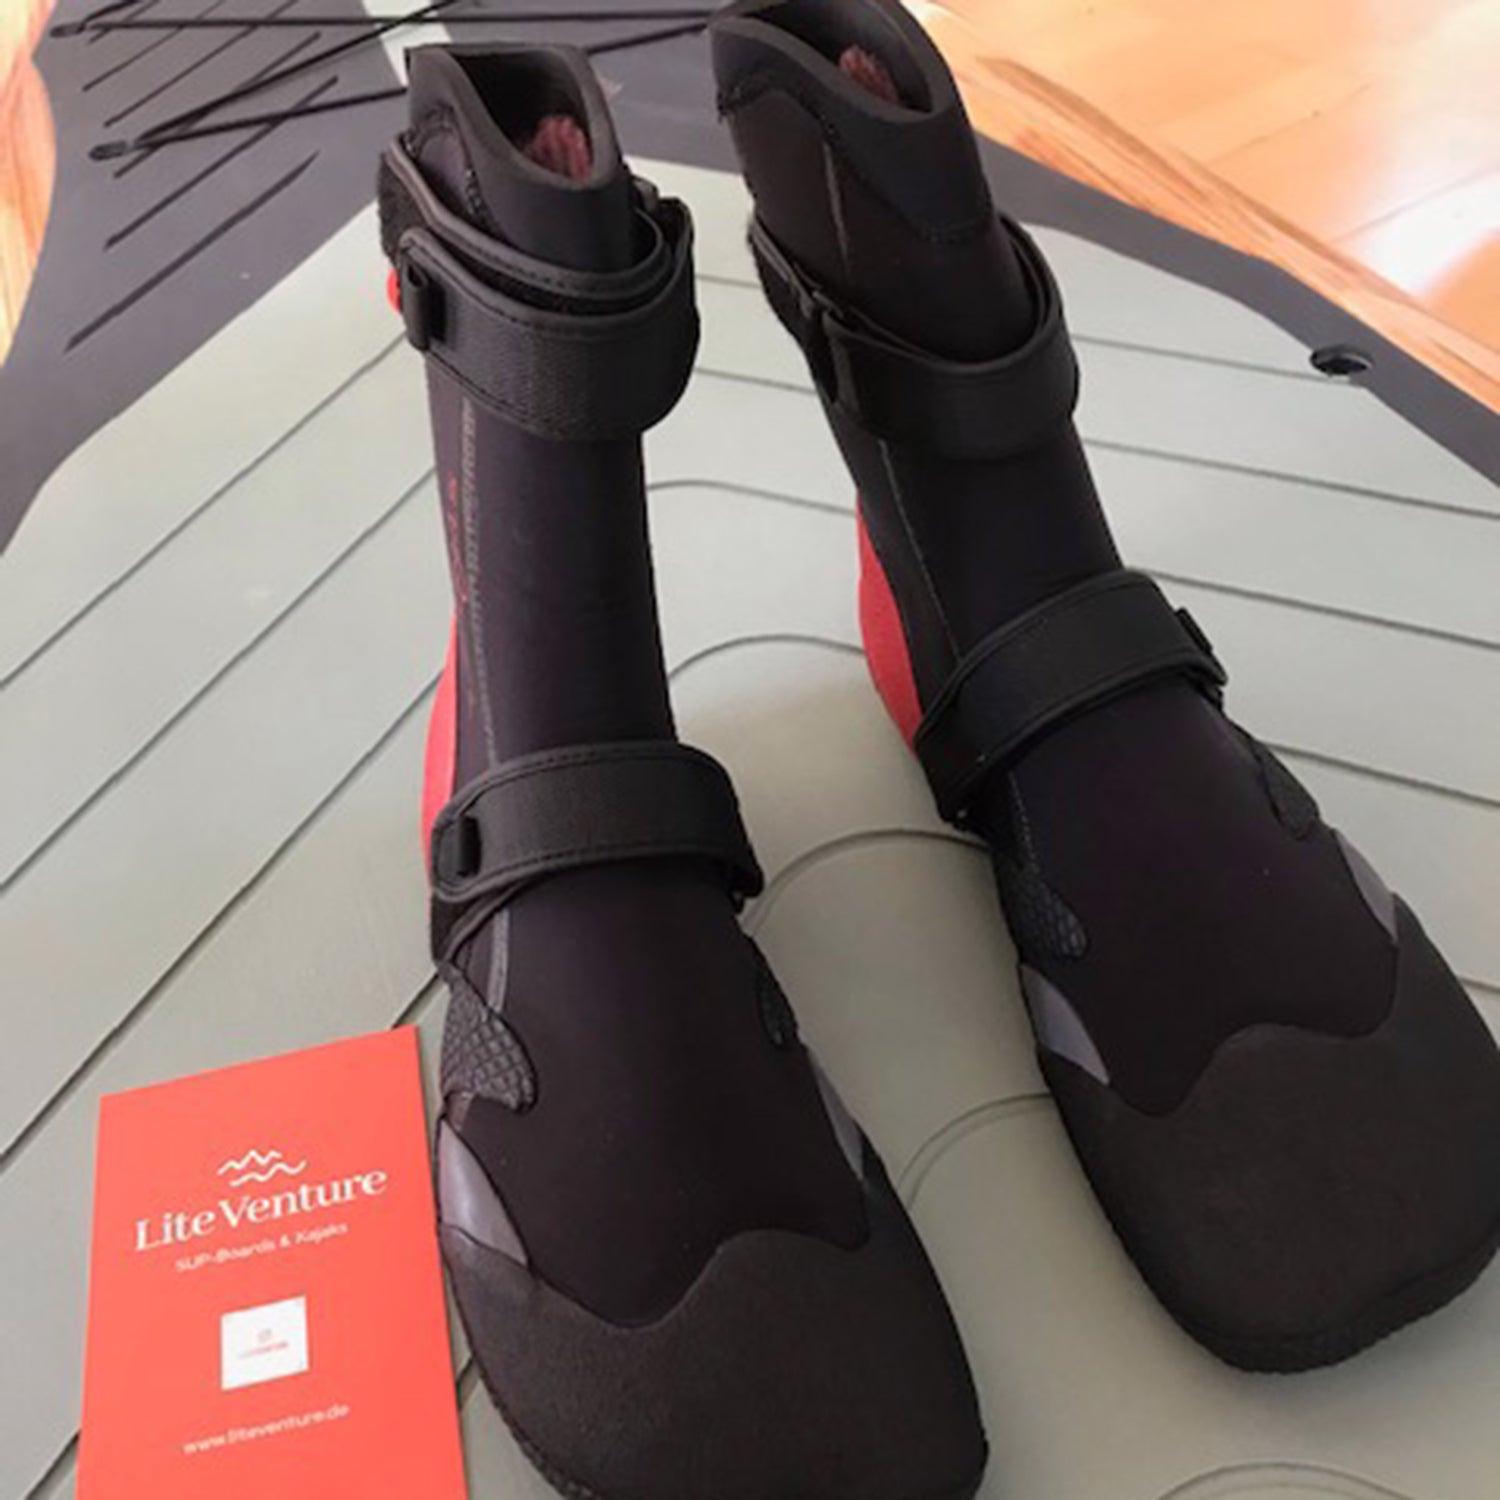 Produktbild von Bekleidung " Neoprenschuhe 7mm-Warm Feet " der Marke Stand Out für 70.00 €. Erhältlich online bei Lite Venture ( www.liteventure.de )